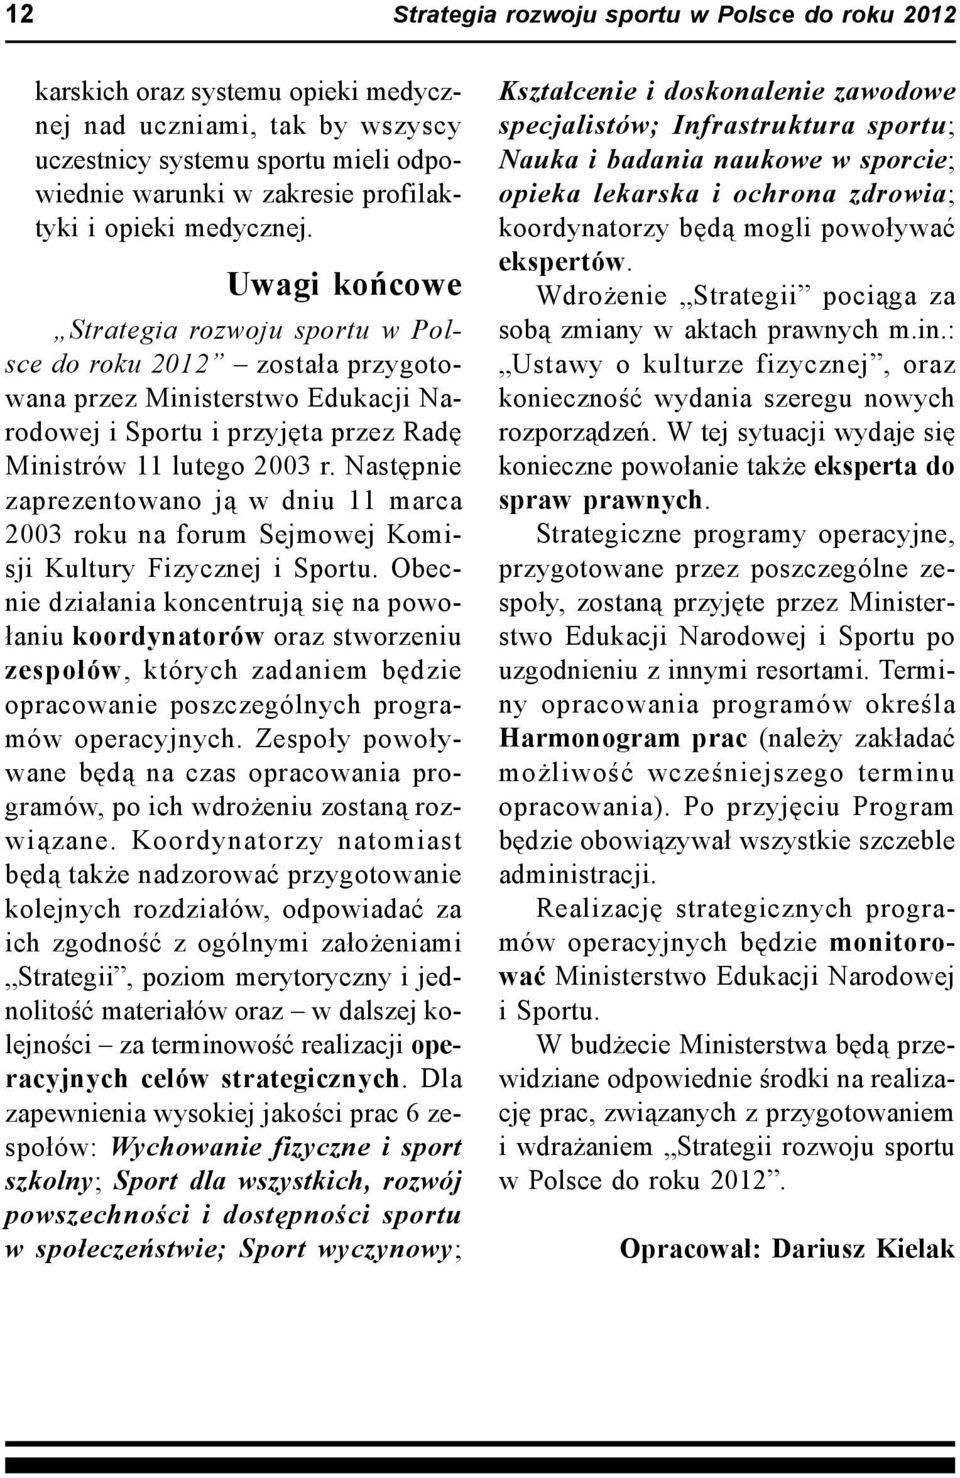 Następnie zaprezentowano ją w dniu 11 marca 2003 roku na forum Sejmowej Komisji Kultury Fizycznej i Sportu.